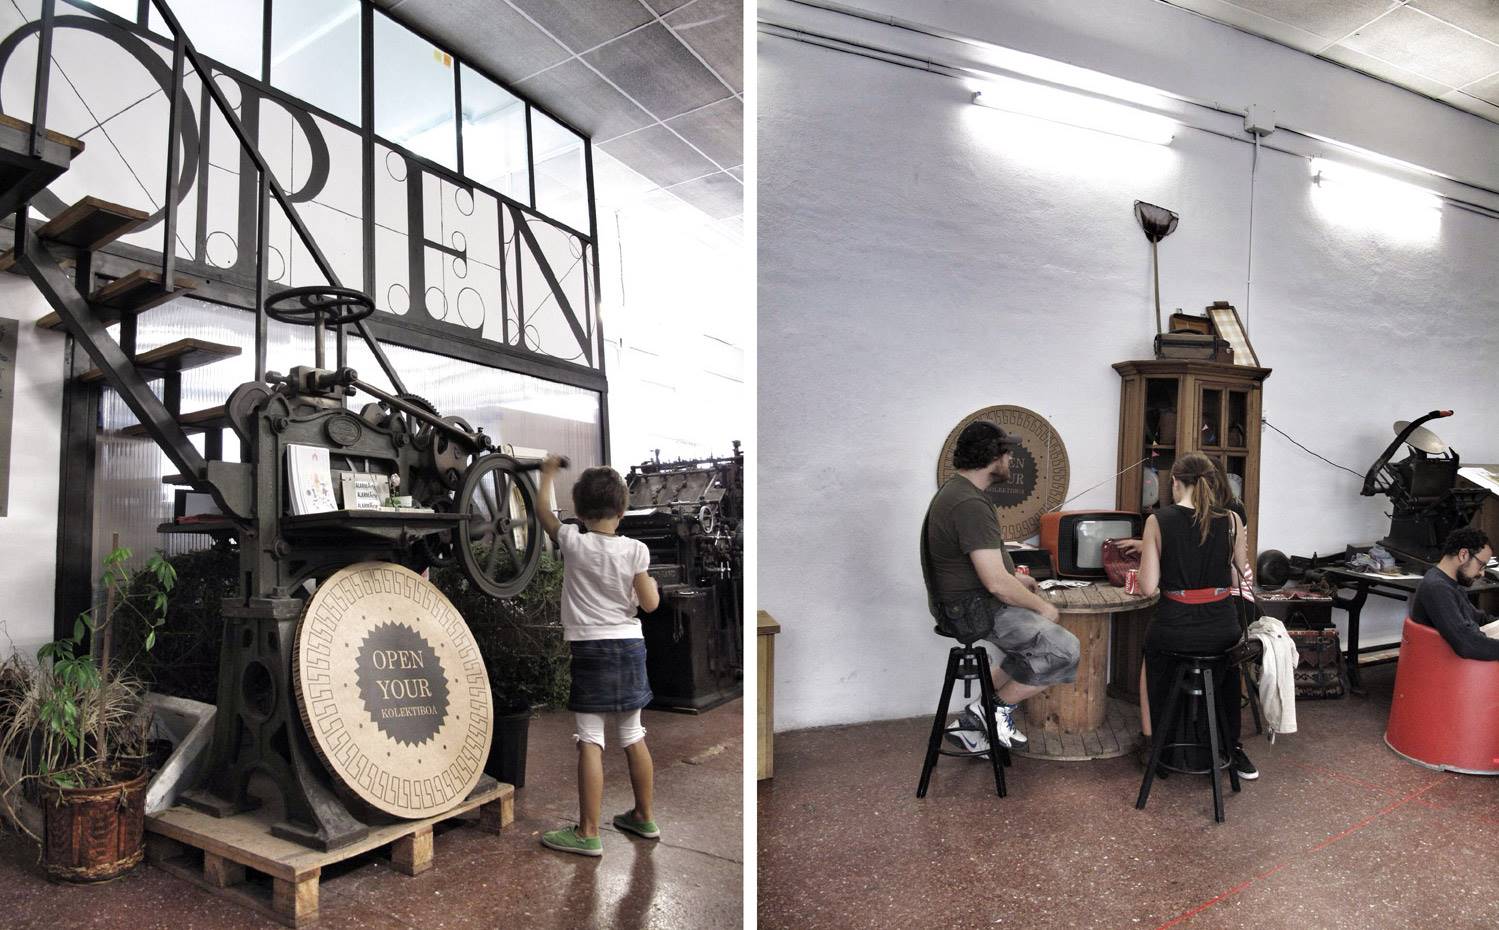 Open your Sormena en la antigua fábrica de galletas de Bilbao.